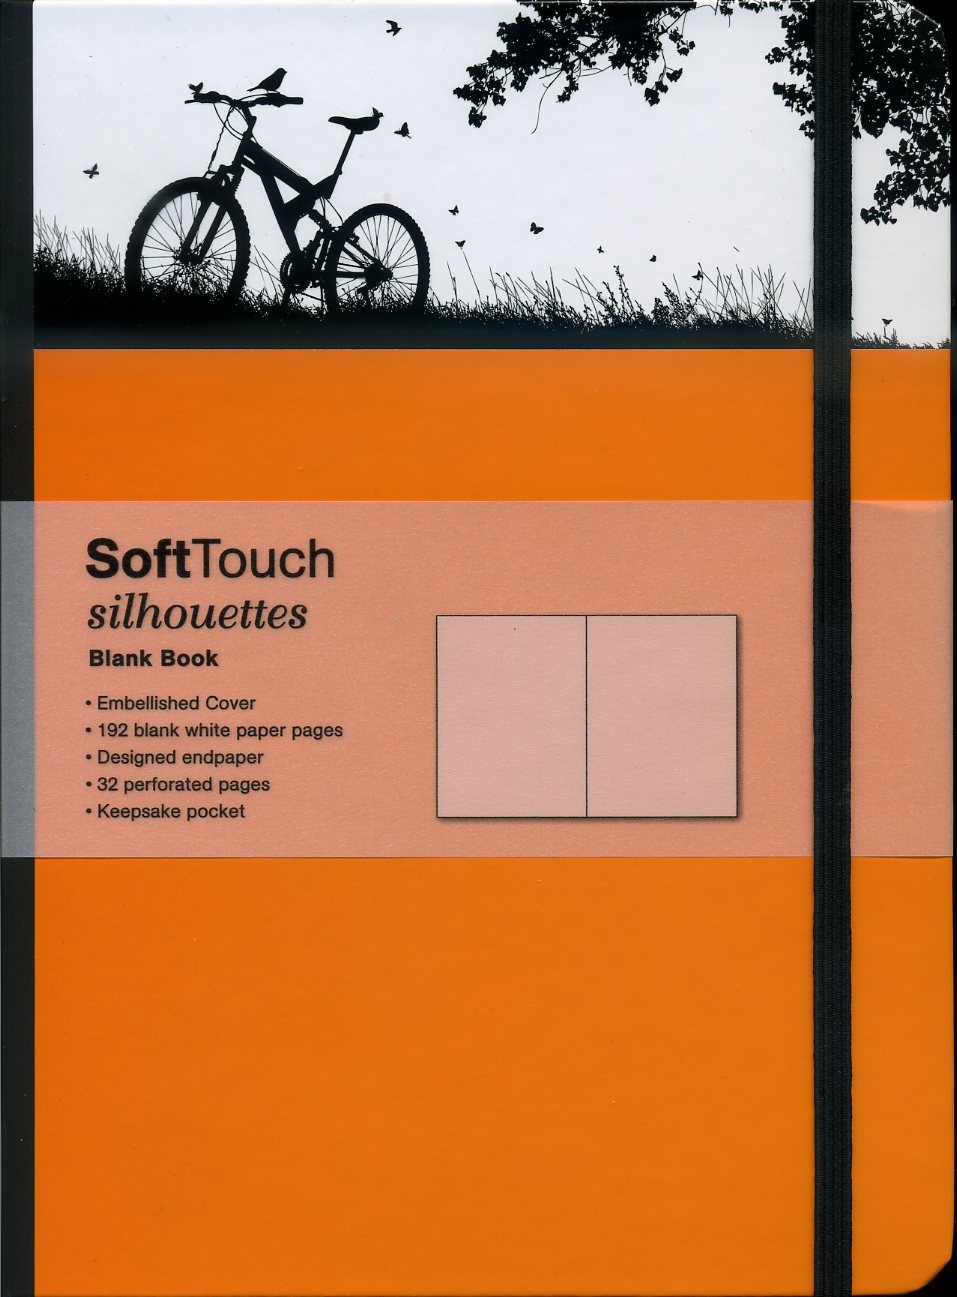 SoftTouch Silhouettes Bike 16x22cm 4002725260918  TeNeues   Reisverhalen & literatuur Reisinformatie algemeen